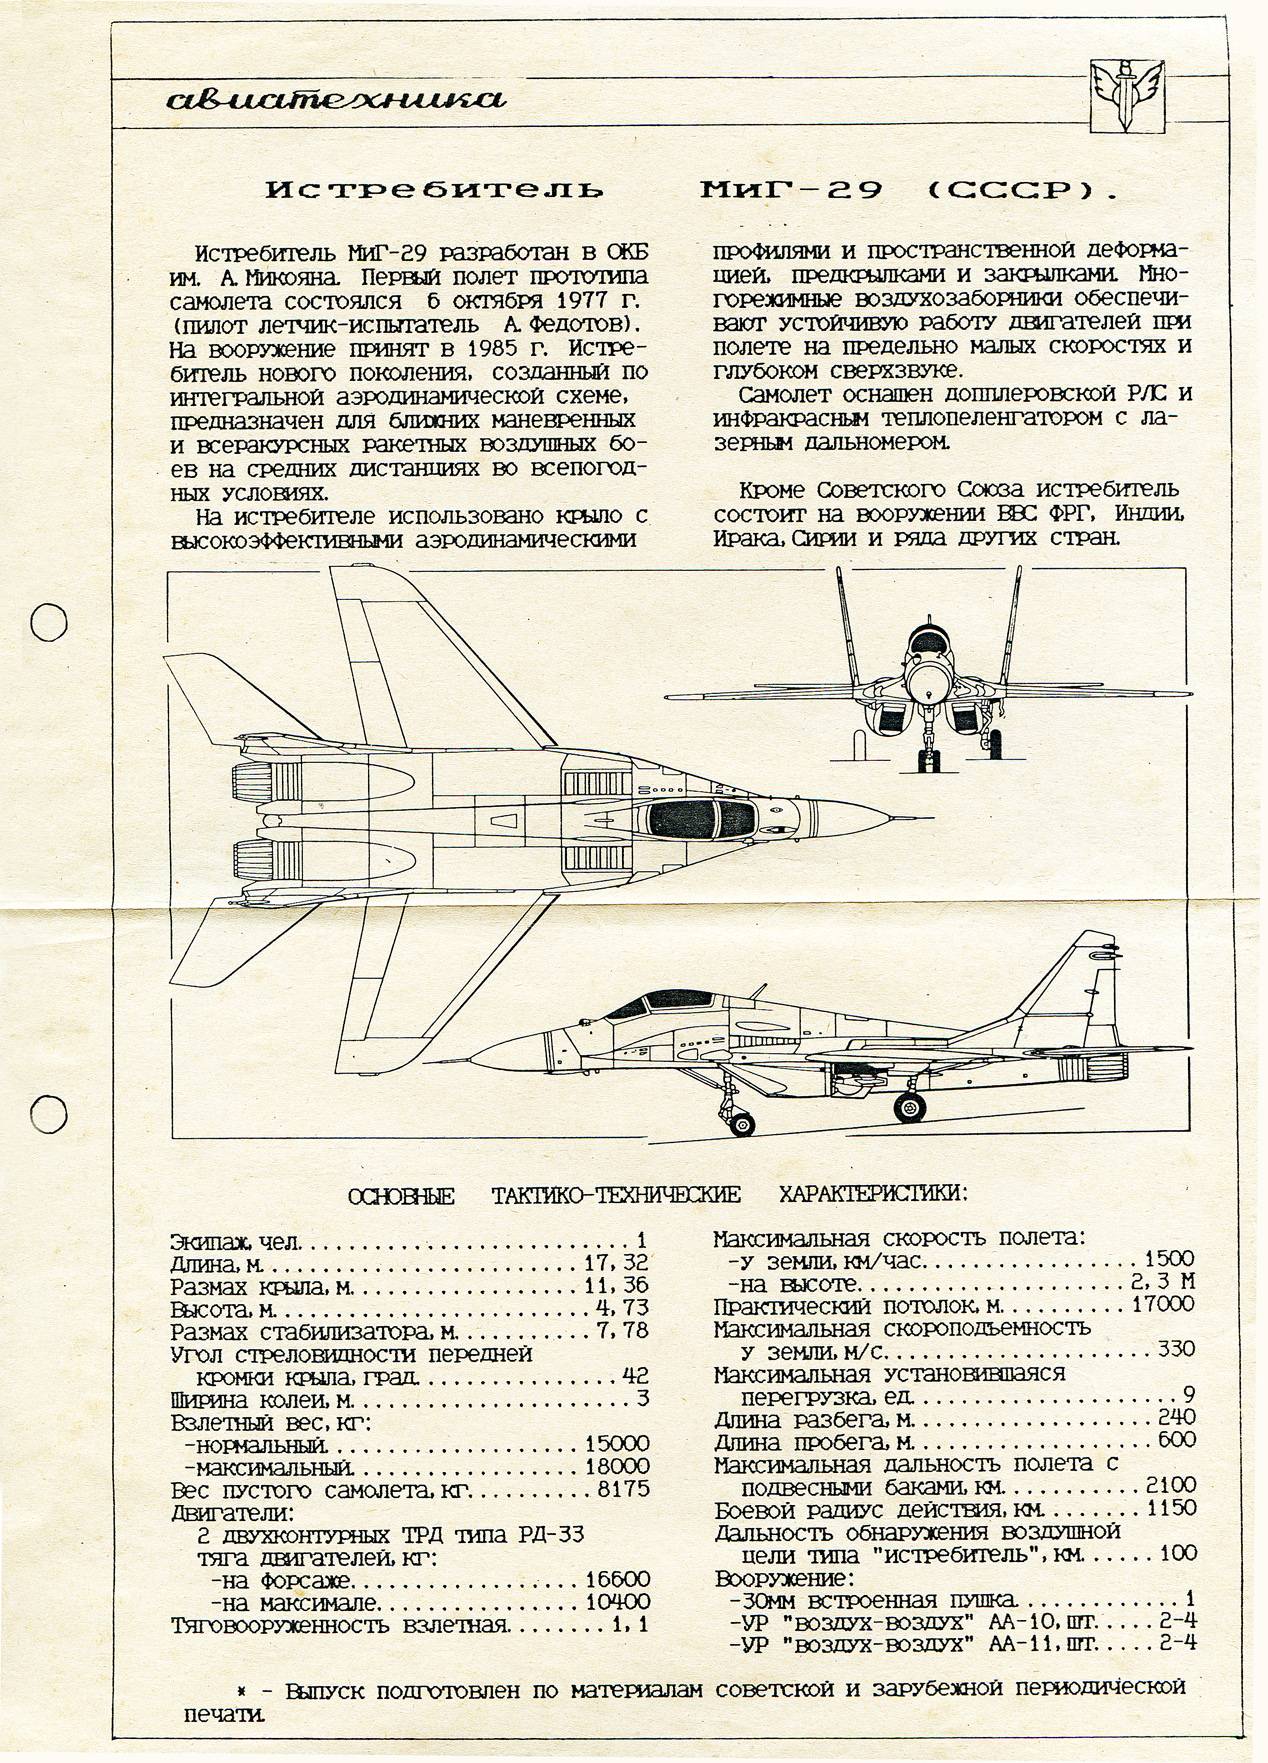 Истребитель миг-29 модернизированый, история, технические характеристики ттх и вооружение самолета, обзор модификаций